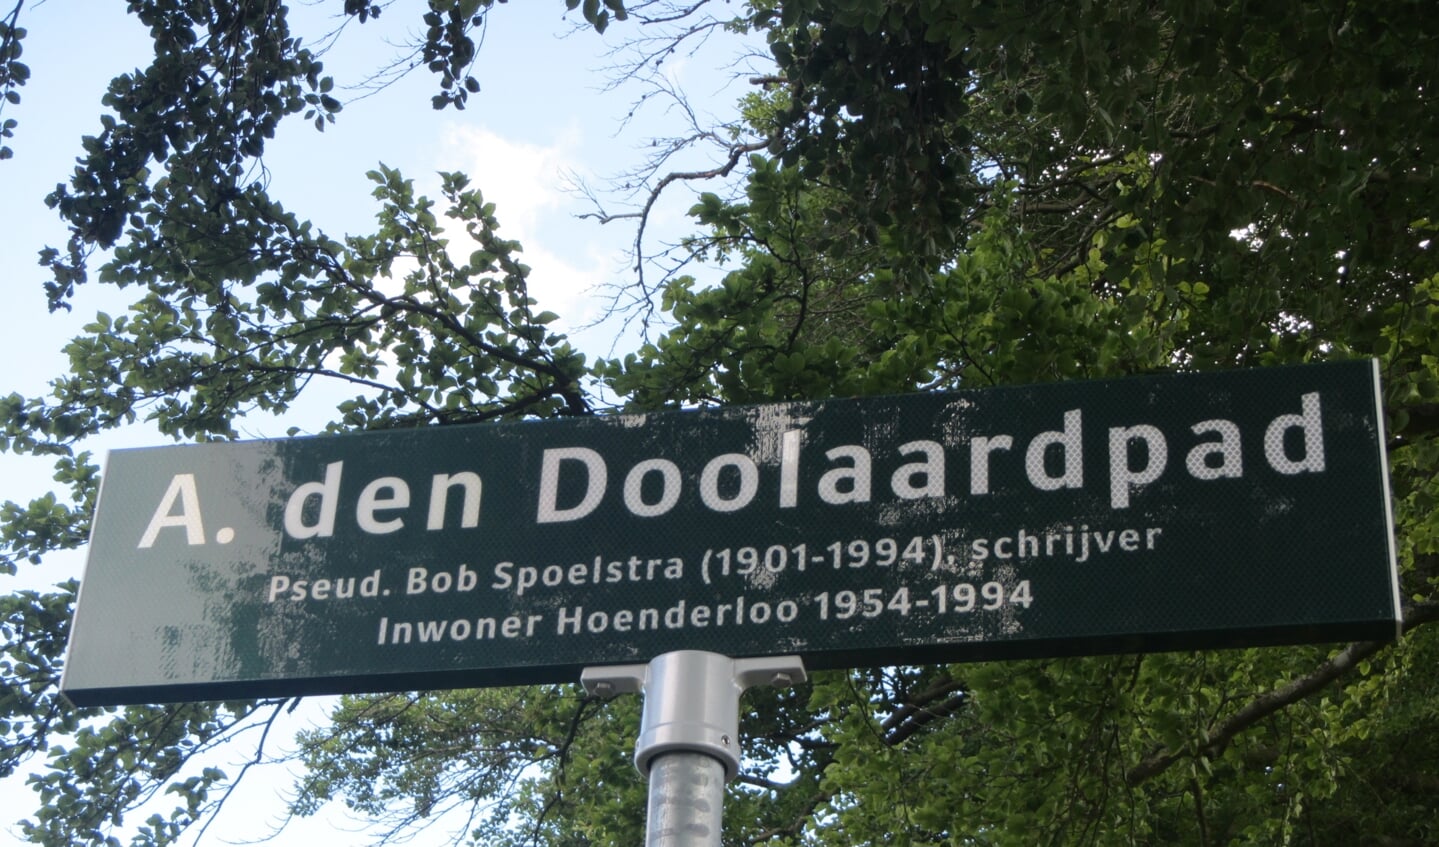 A. den Doolaardpad, onthuld t.g.v. de 25ste sterfdag van de schrijver.